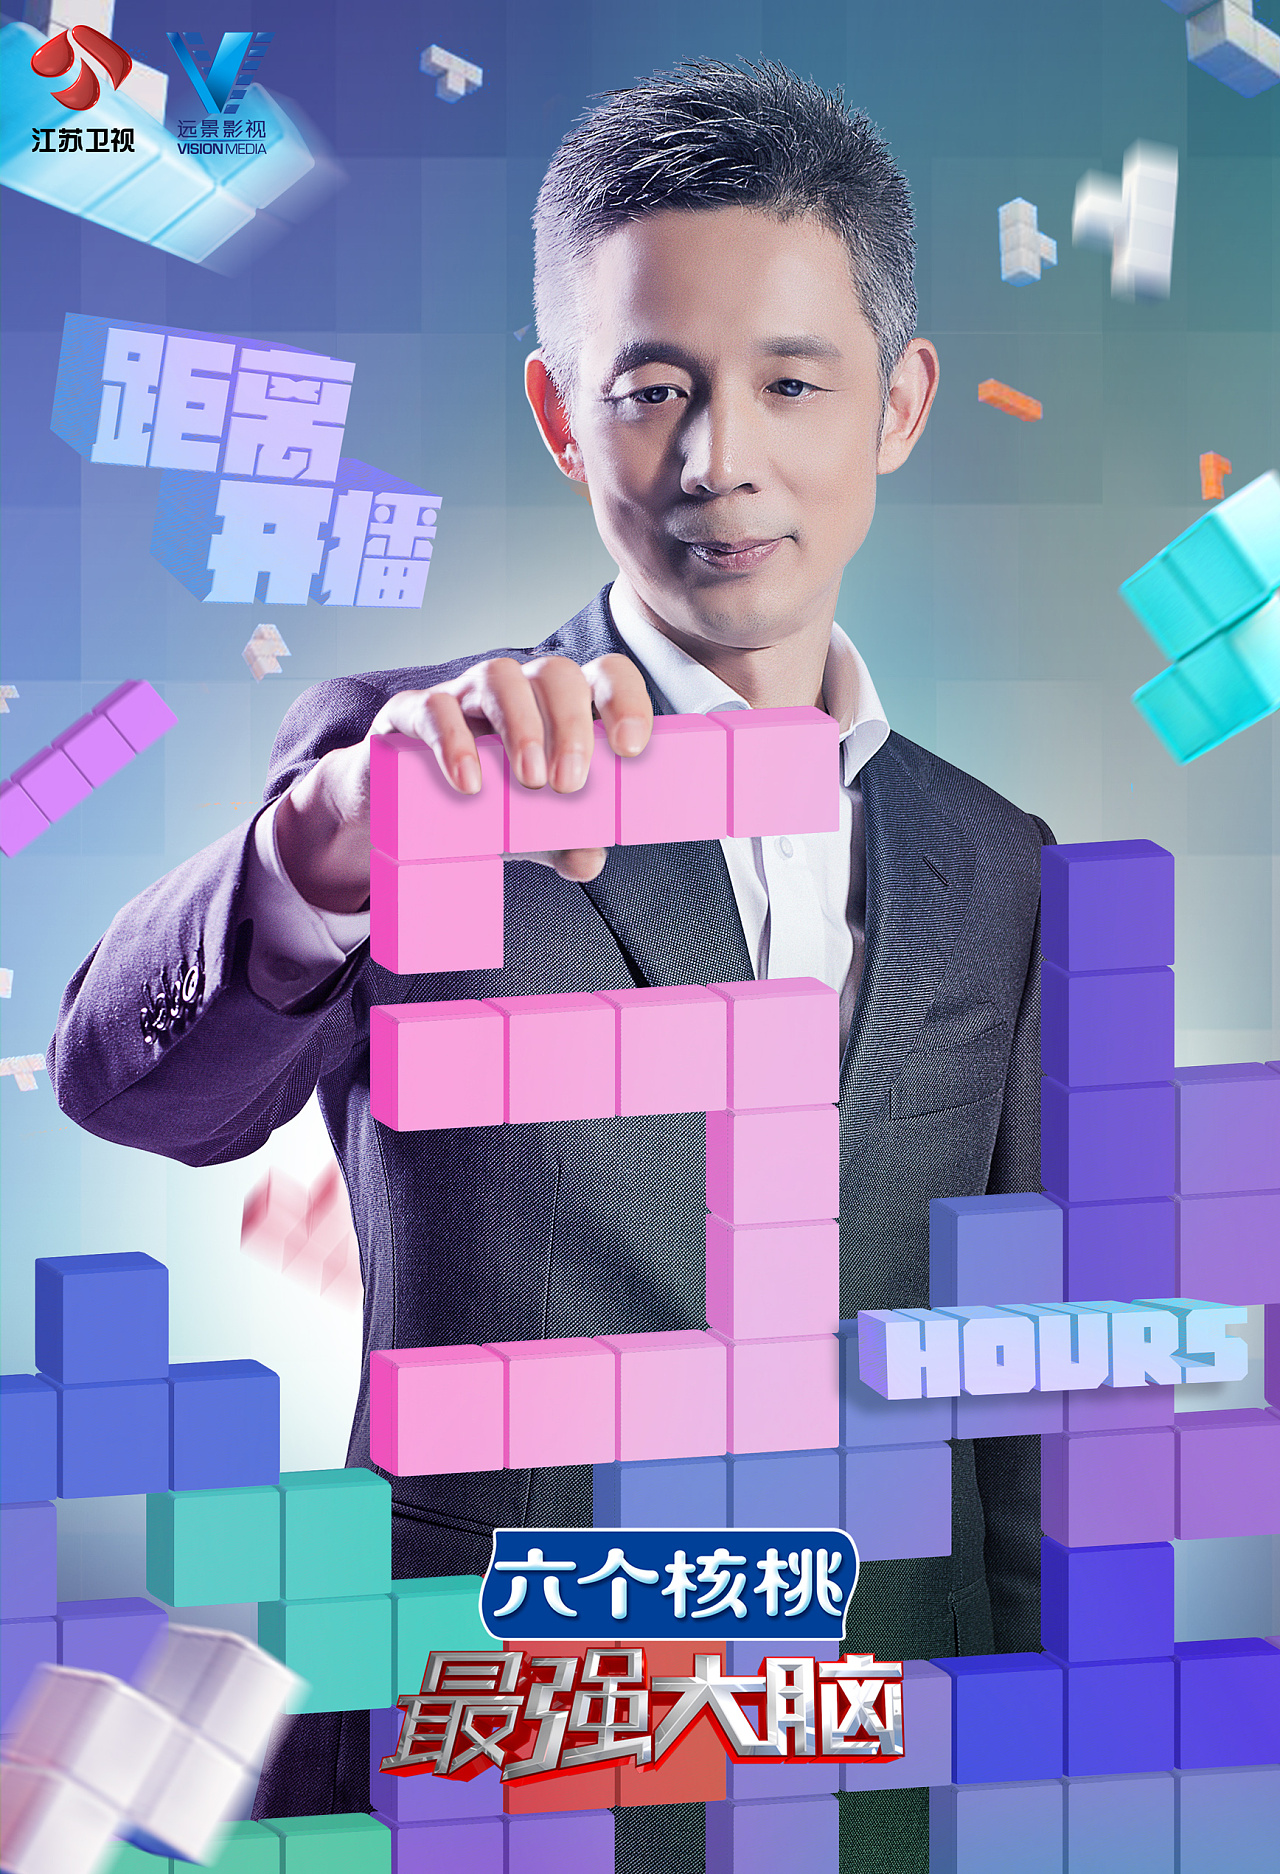 江苏卫视最强大脑第四季节目宣传海报